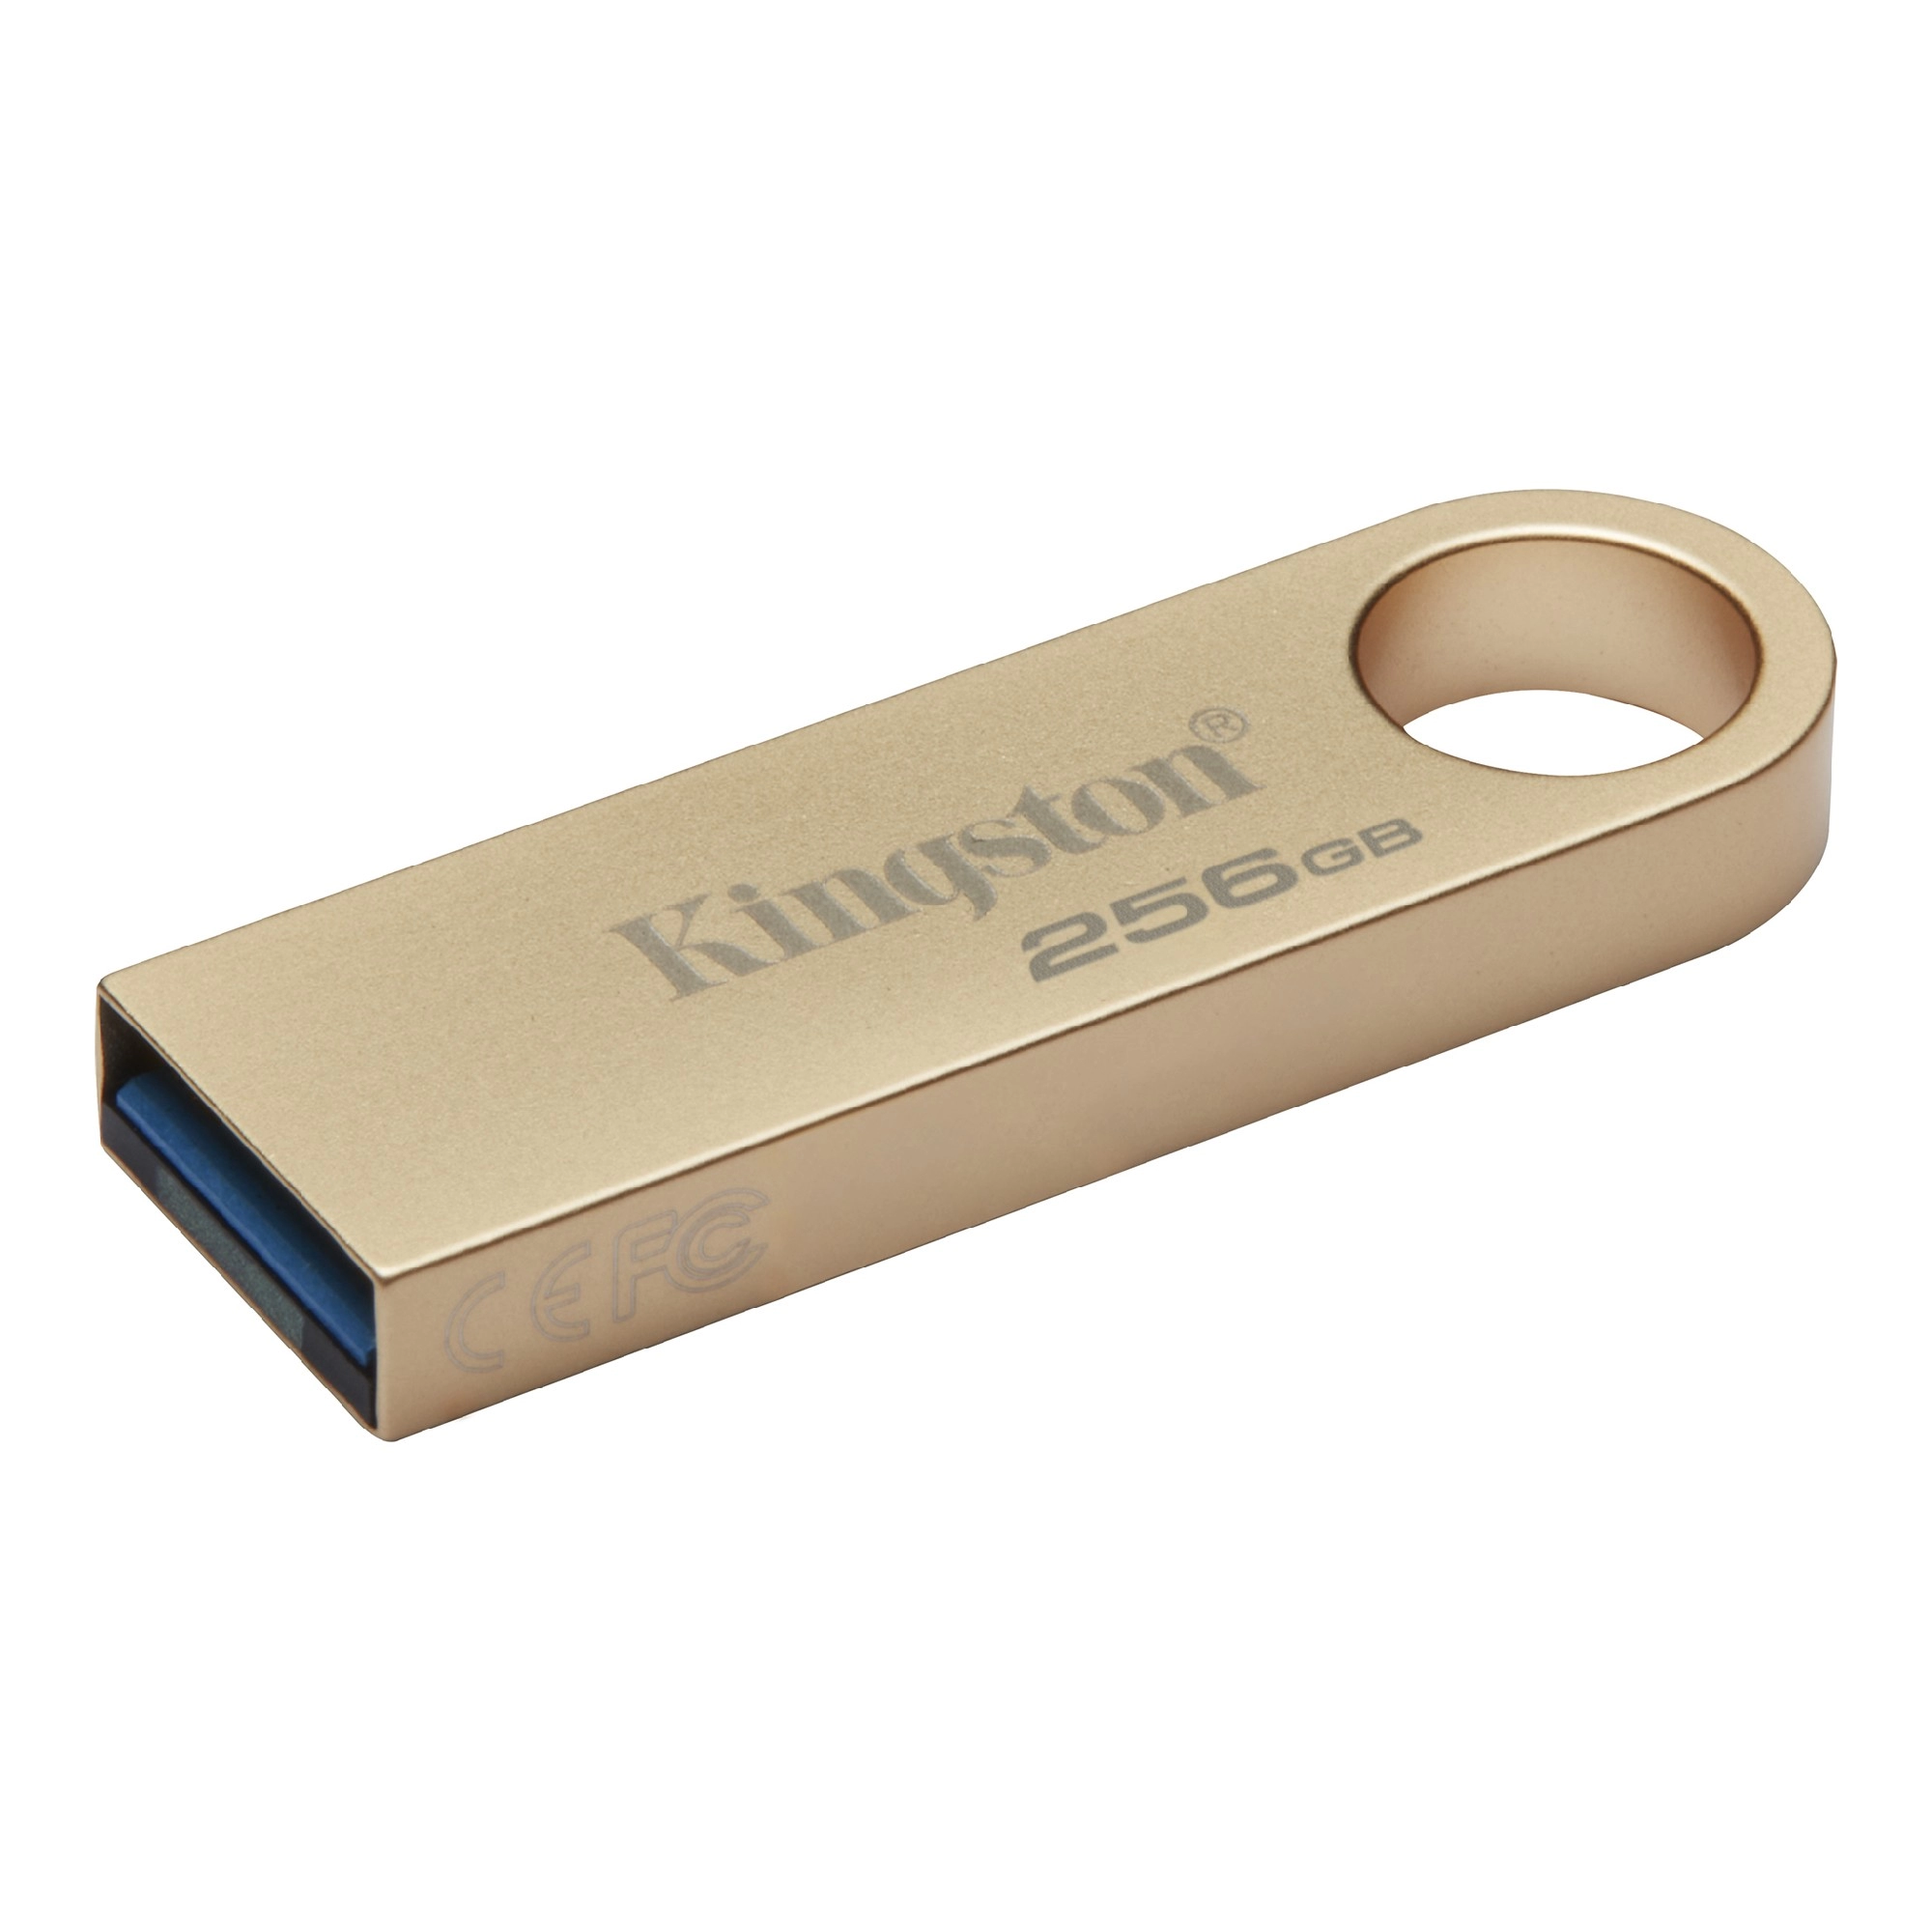 USB Flash Drive Kingston DataTraveler SE9 G3 / 256GB / USB3.2 Gen1 / Gold